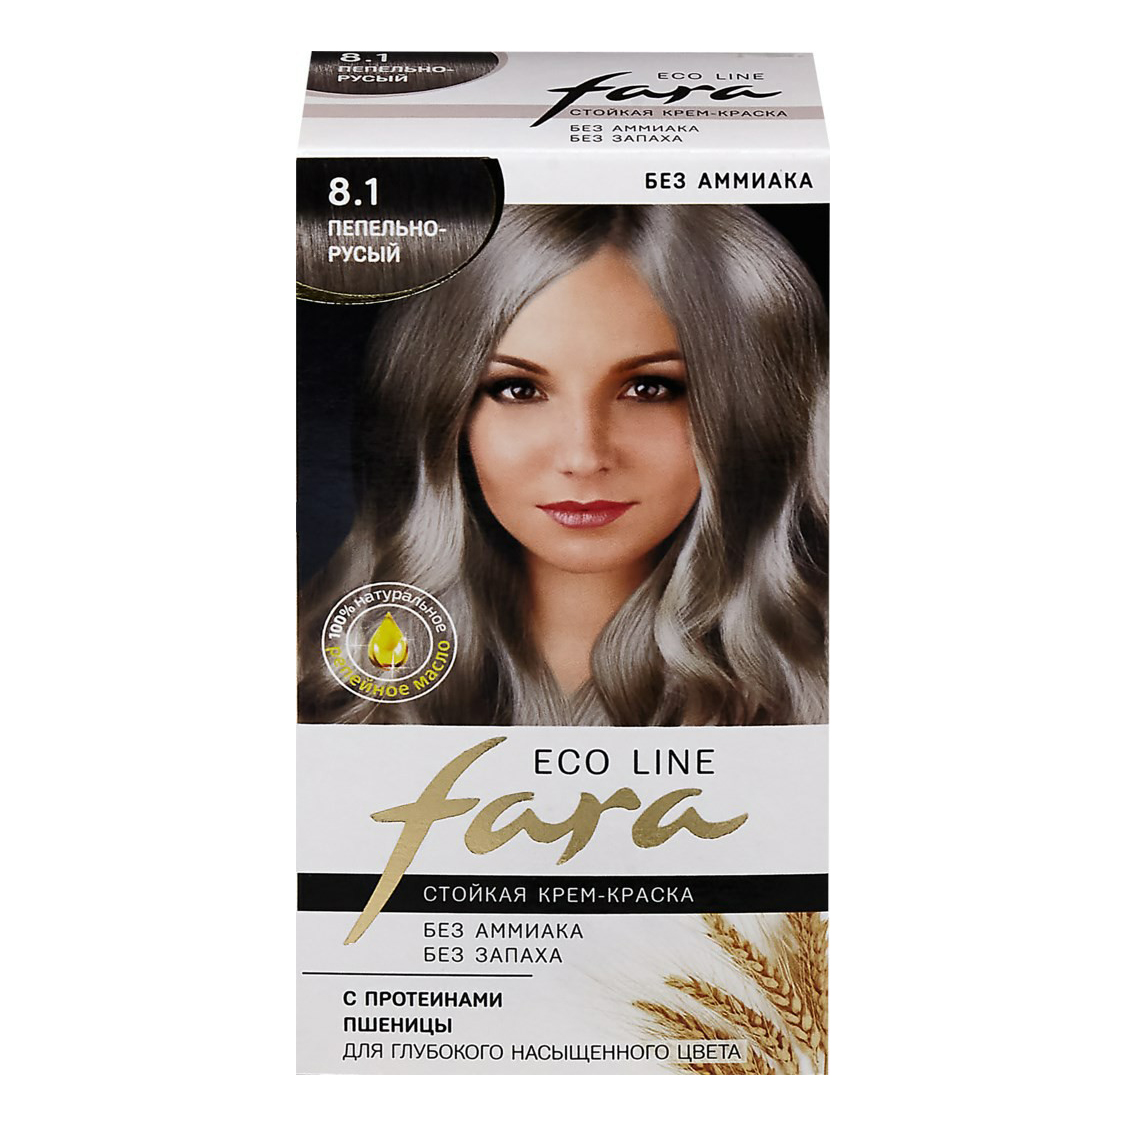 Краска для волос Fara Eco Line тон 8,1 пепельно-русый 125 г русская религиозная аксиология